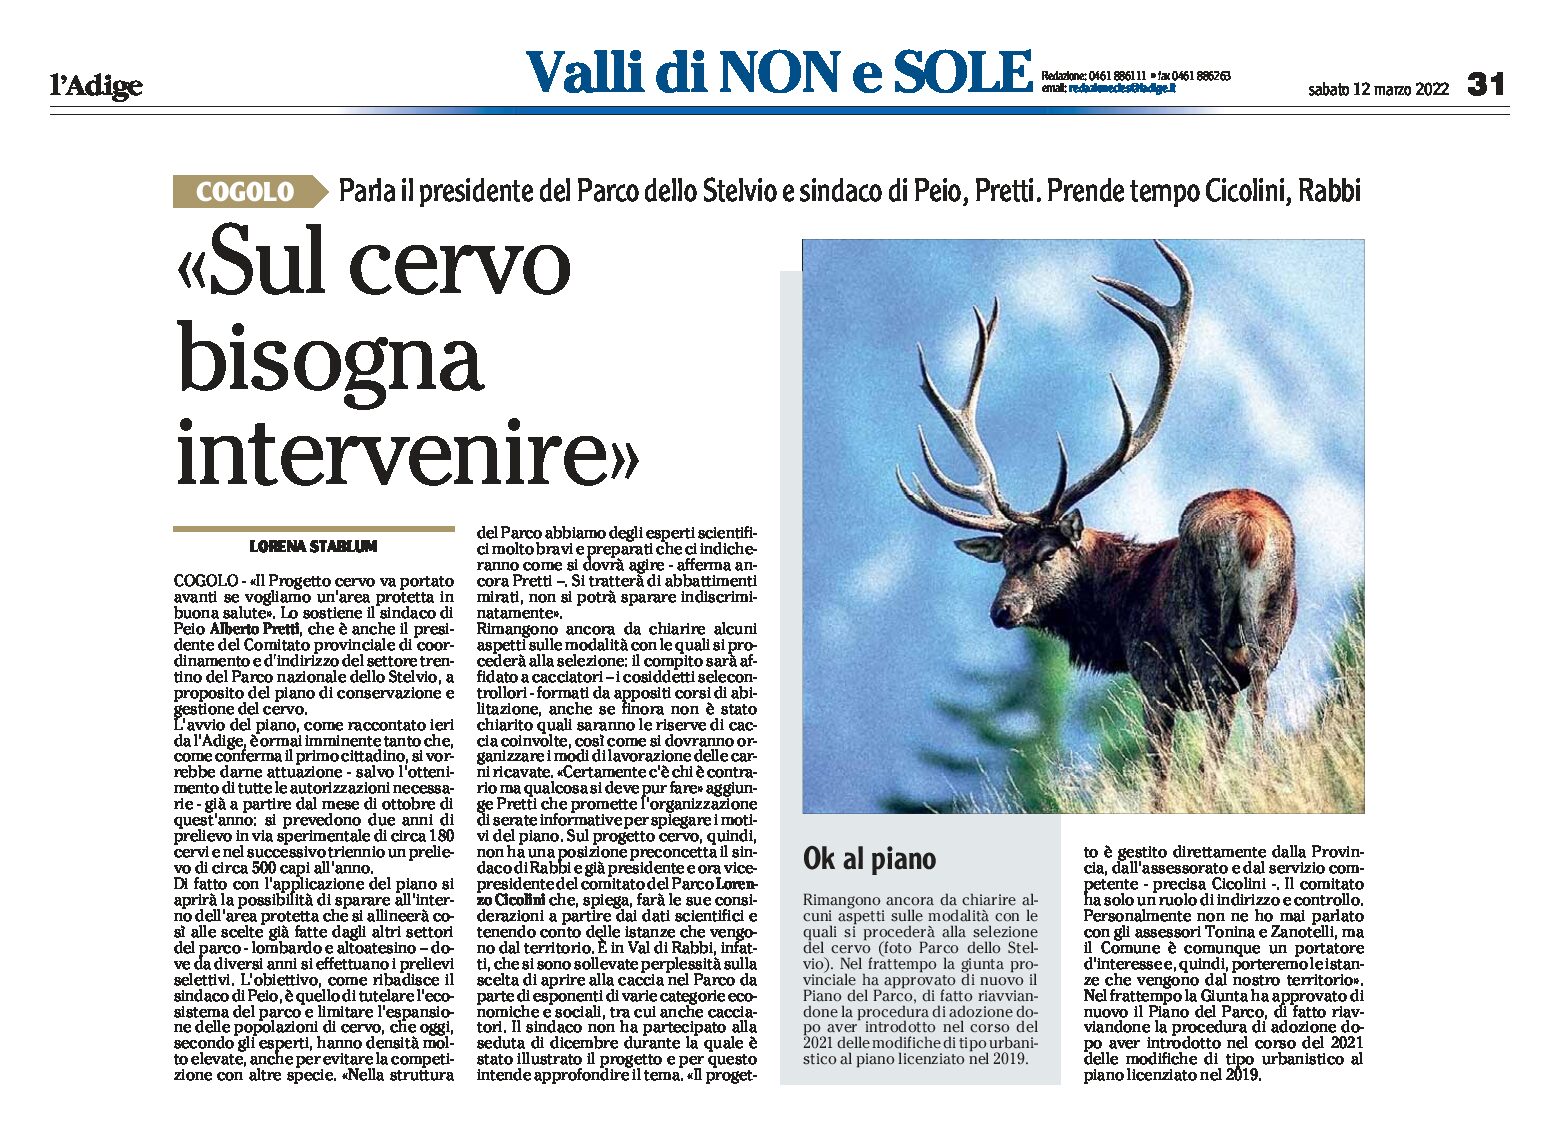 Parco dello Stelvio: il presidente Pretti “sul cervo bisogna intervenire”